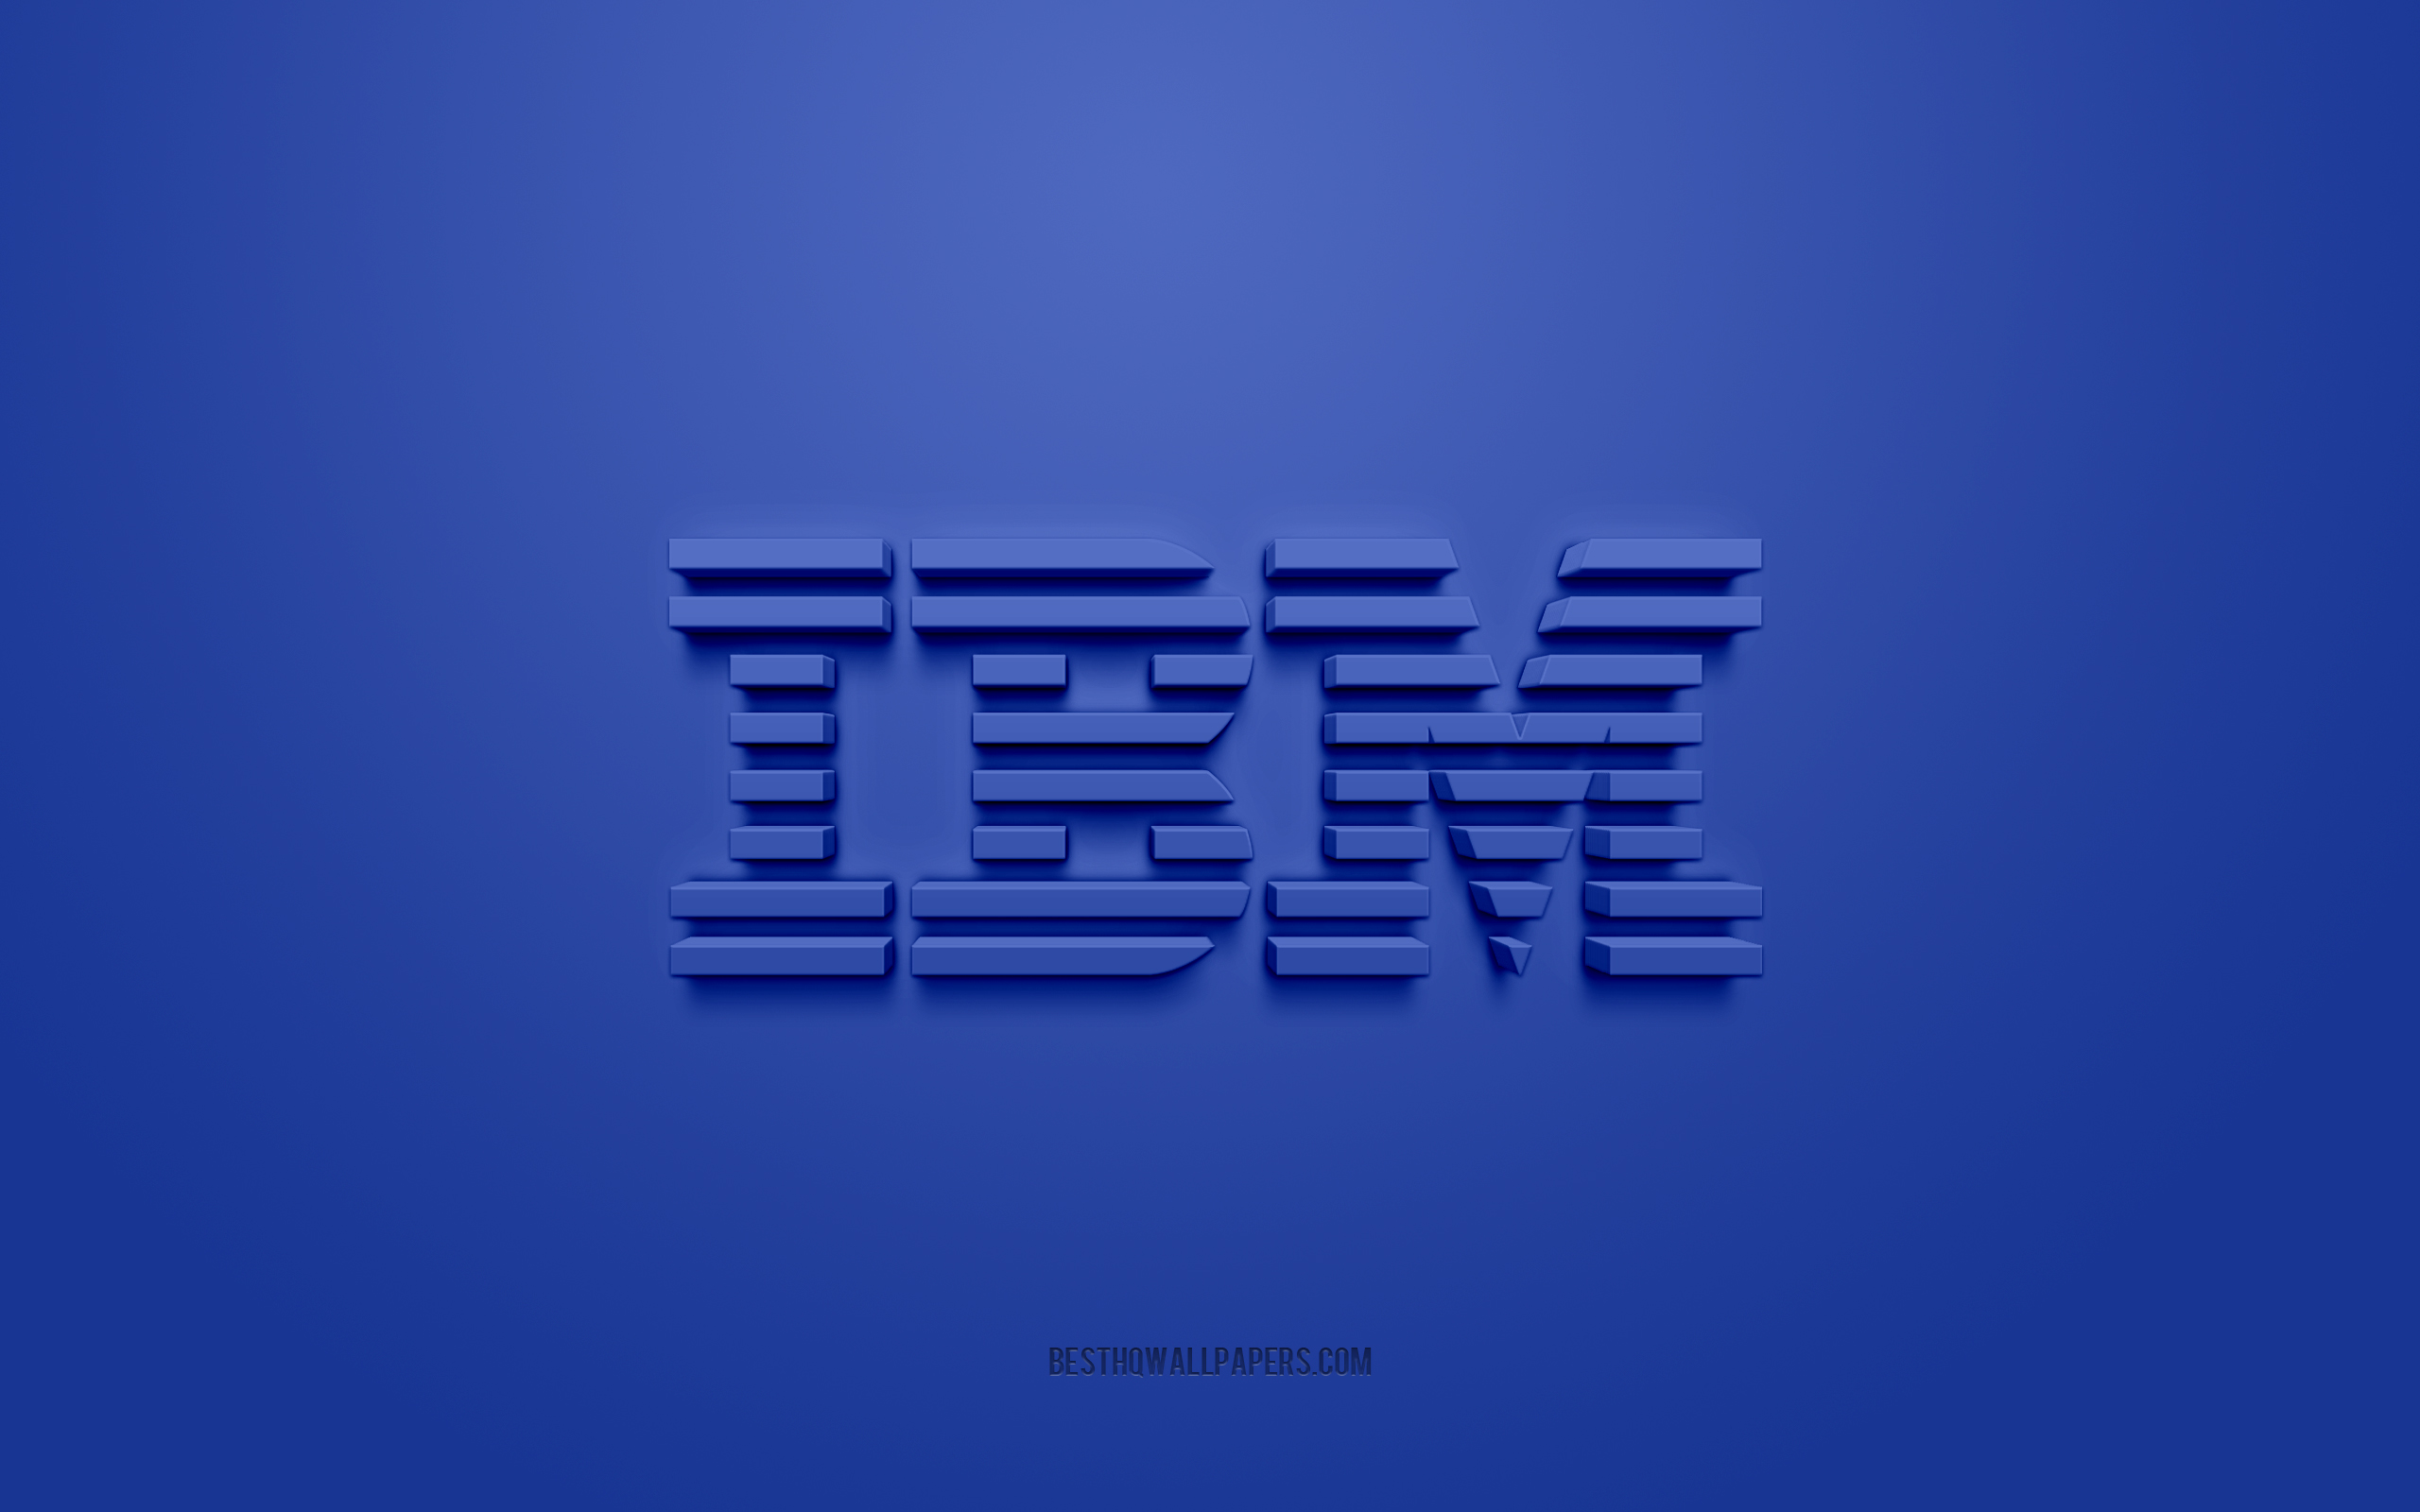 Ibm blue. Картинки IBM. IBM обои. IBM mq логотип. День рождение IBM логотип.